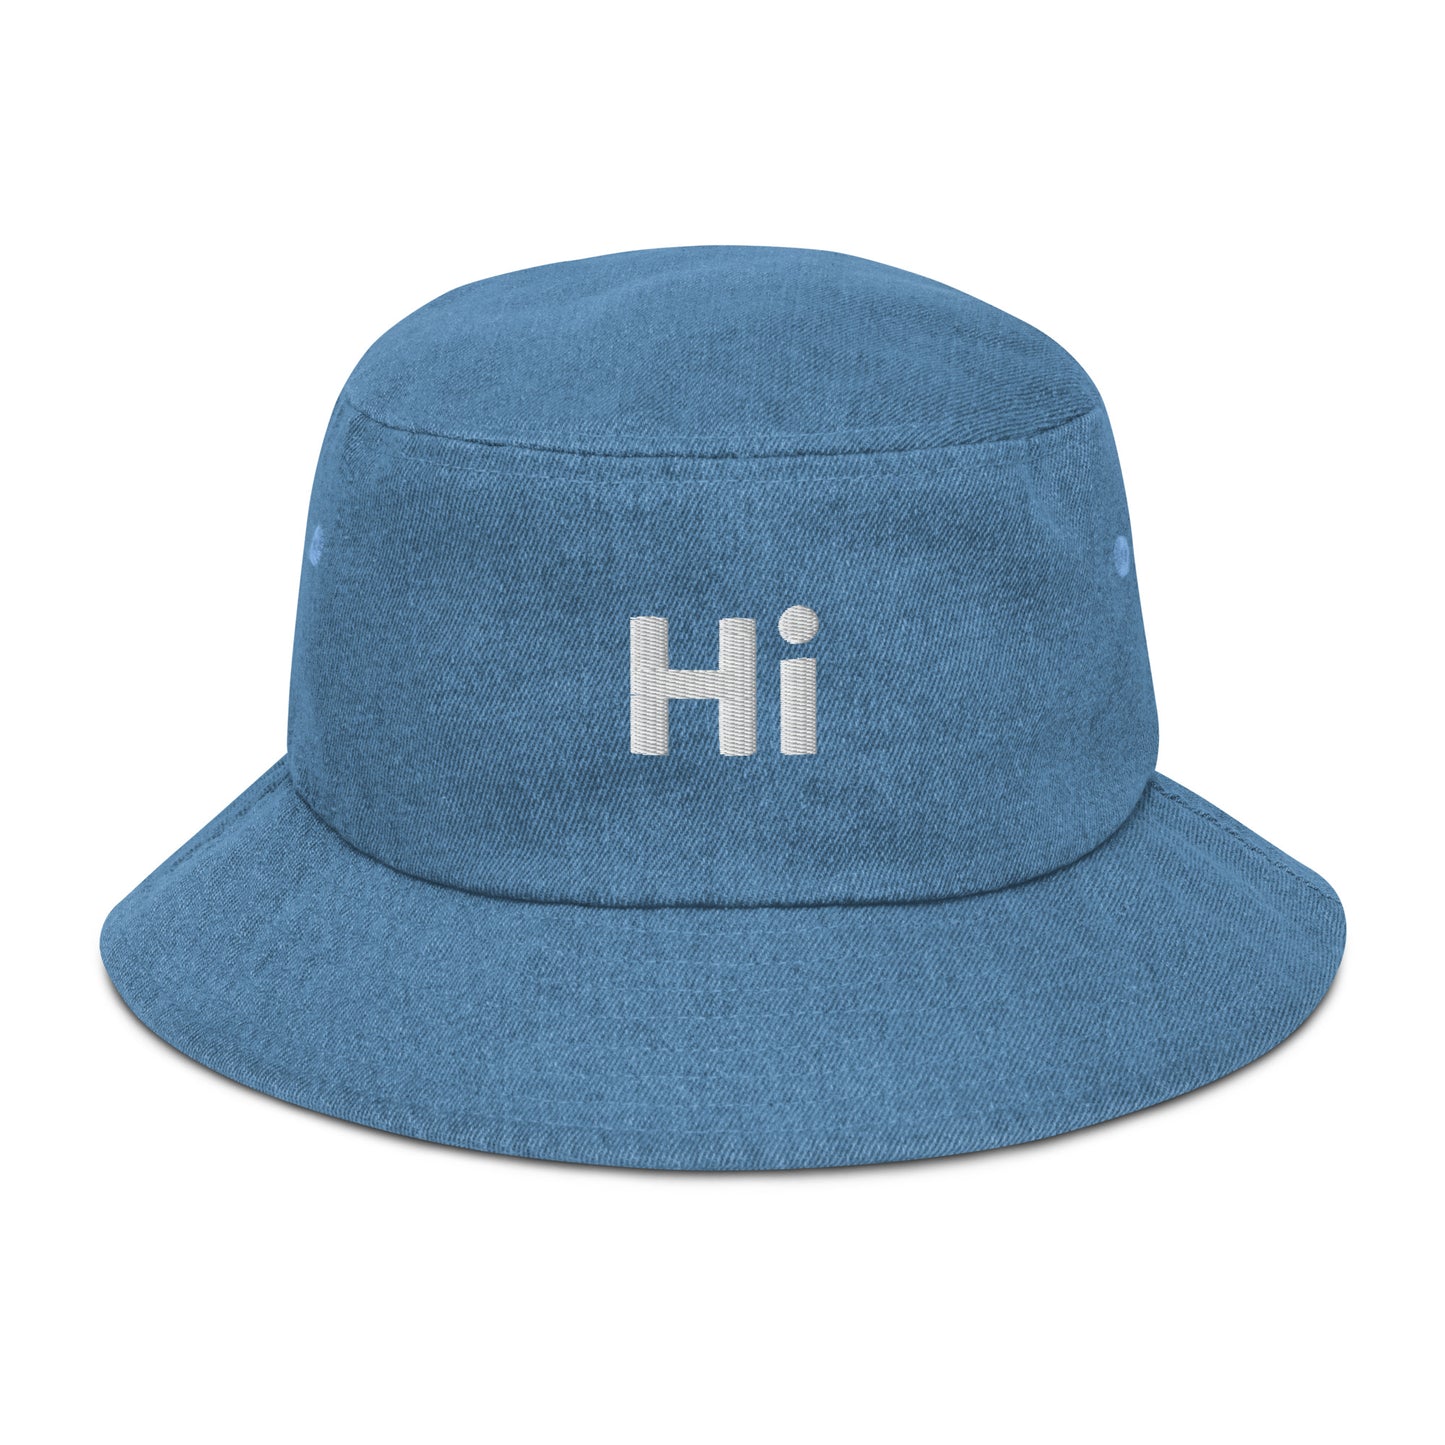 Hi Happy interactions Denim Bucket Hat in Light Blue Denim